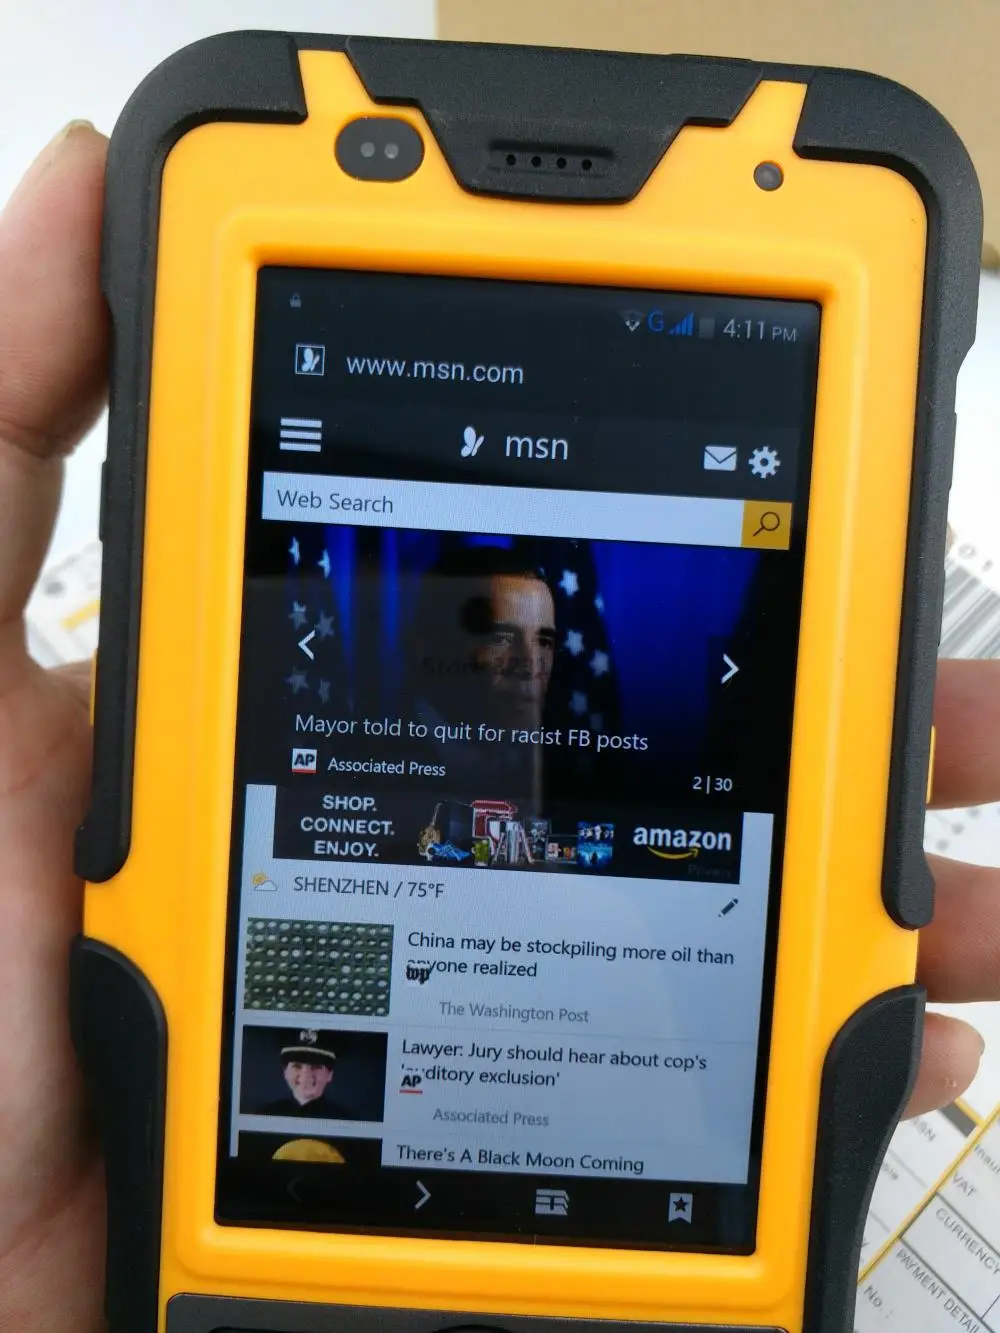 Прочный водонепроницаемый большой телефон Ручной терминал сканер штрих-кода Android Bluetooth PDA NFC 2D лазерный считыватель 3g сборщик данных